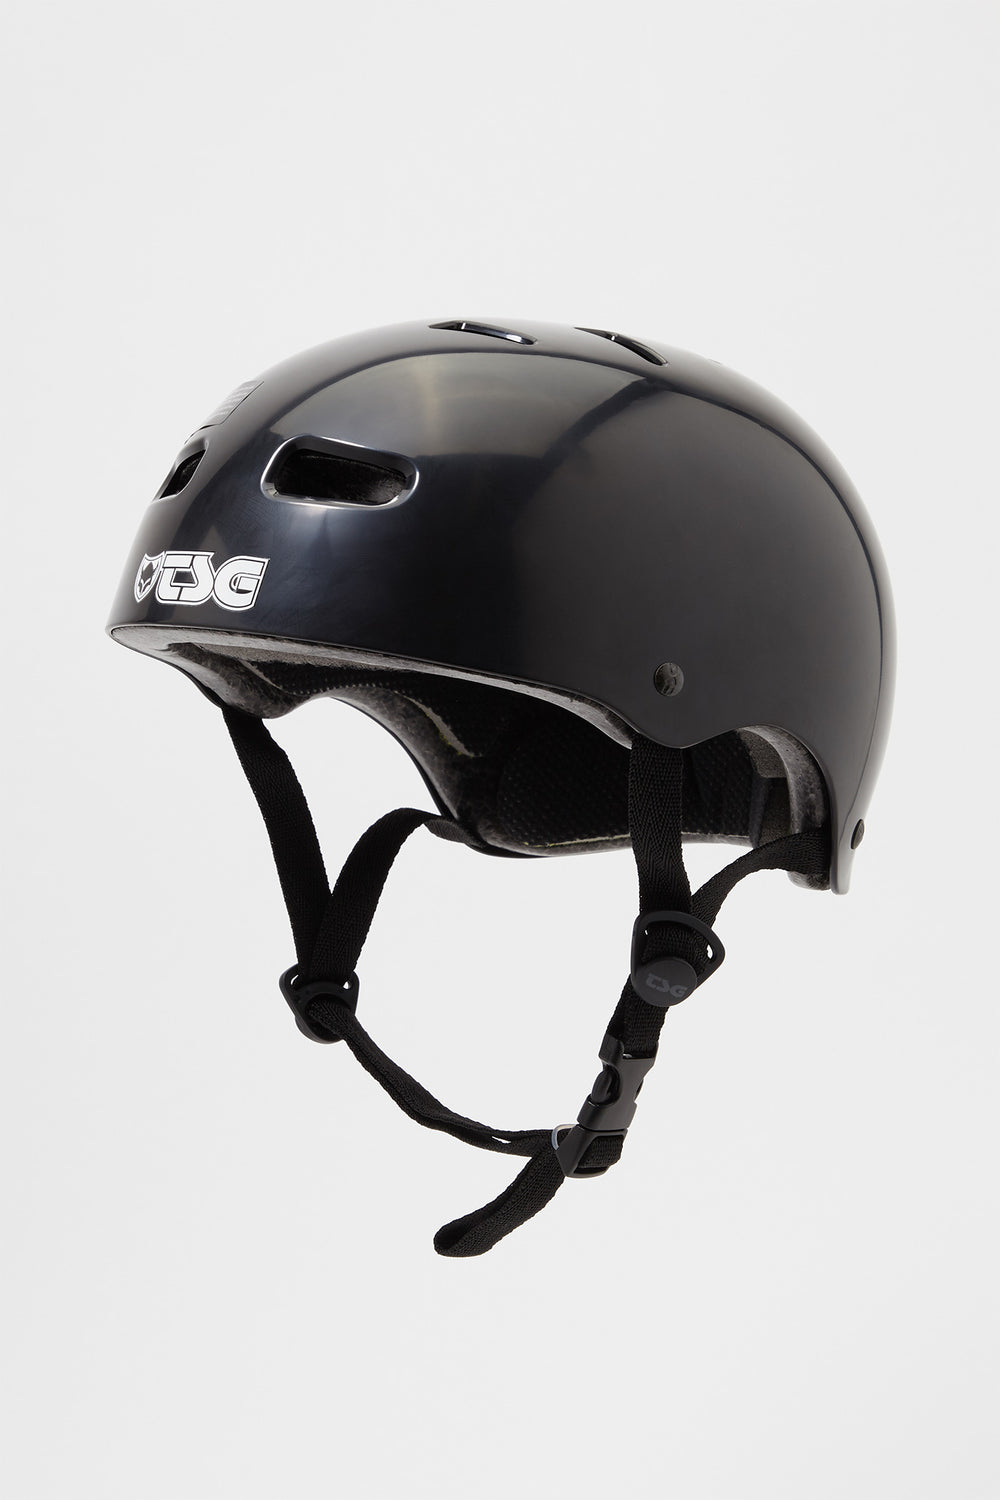 TSG Skate Helmet Black